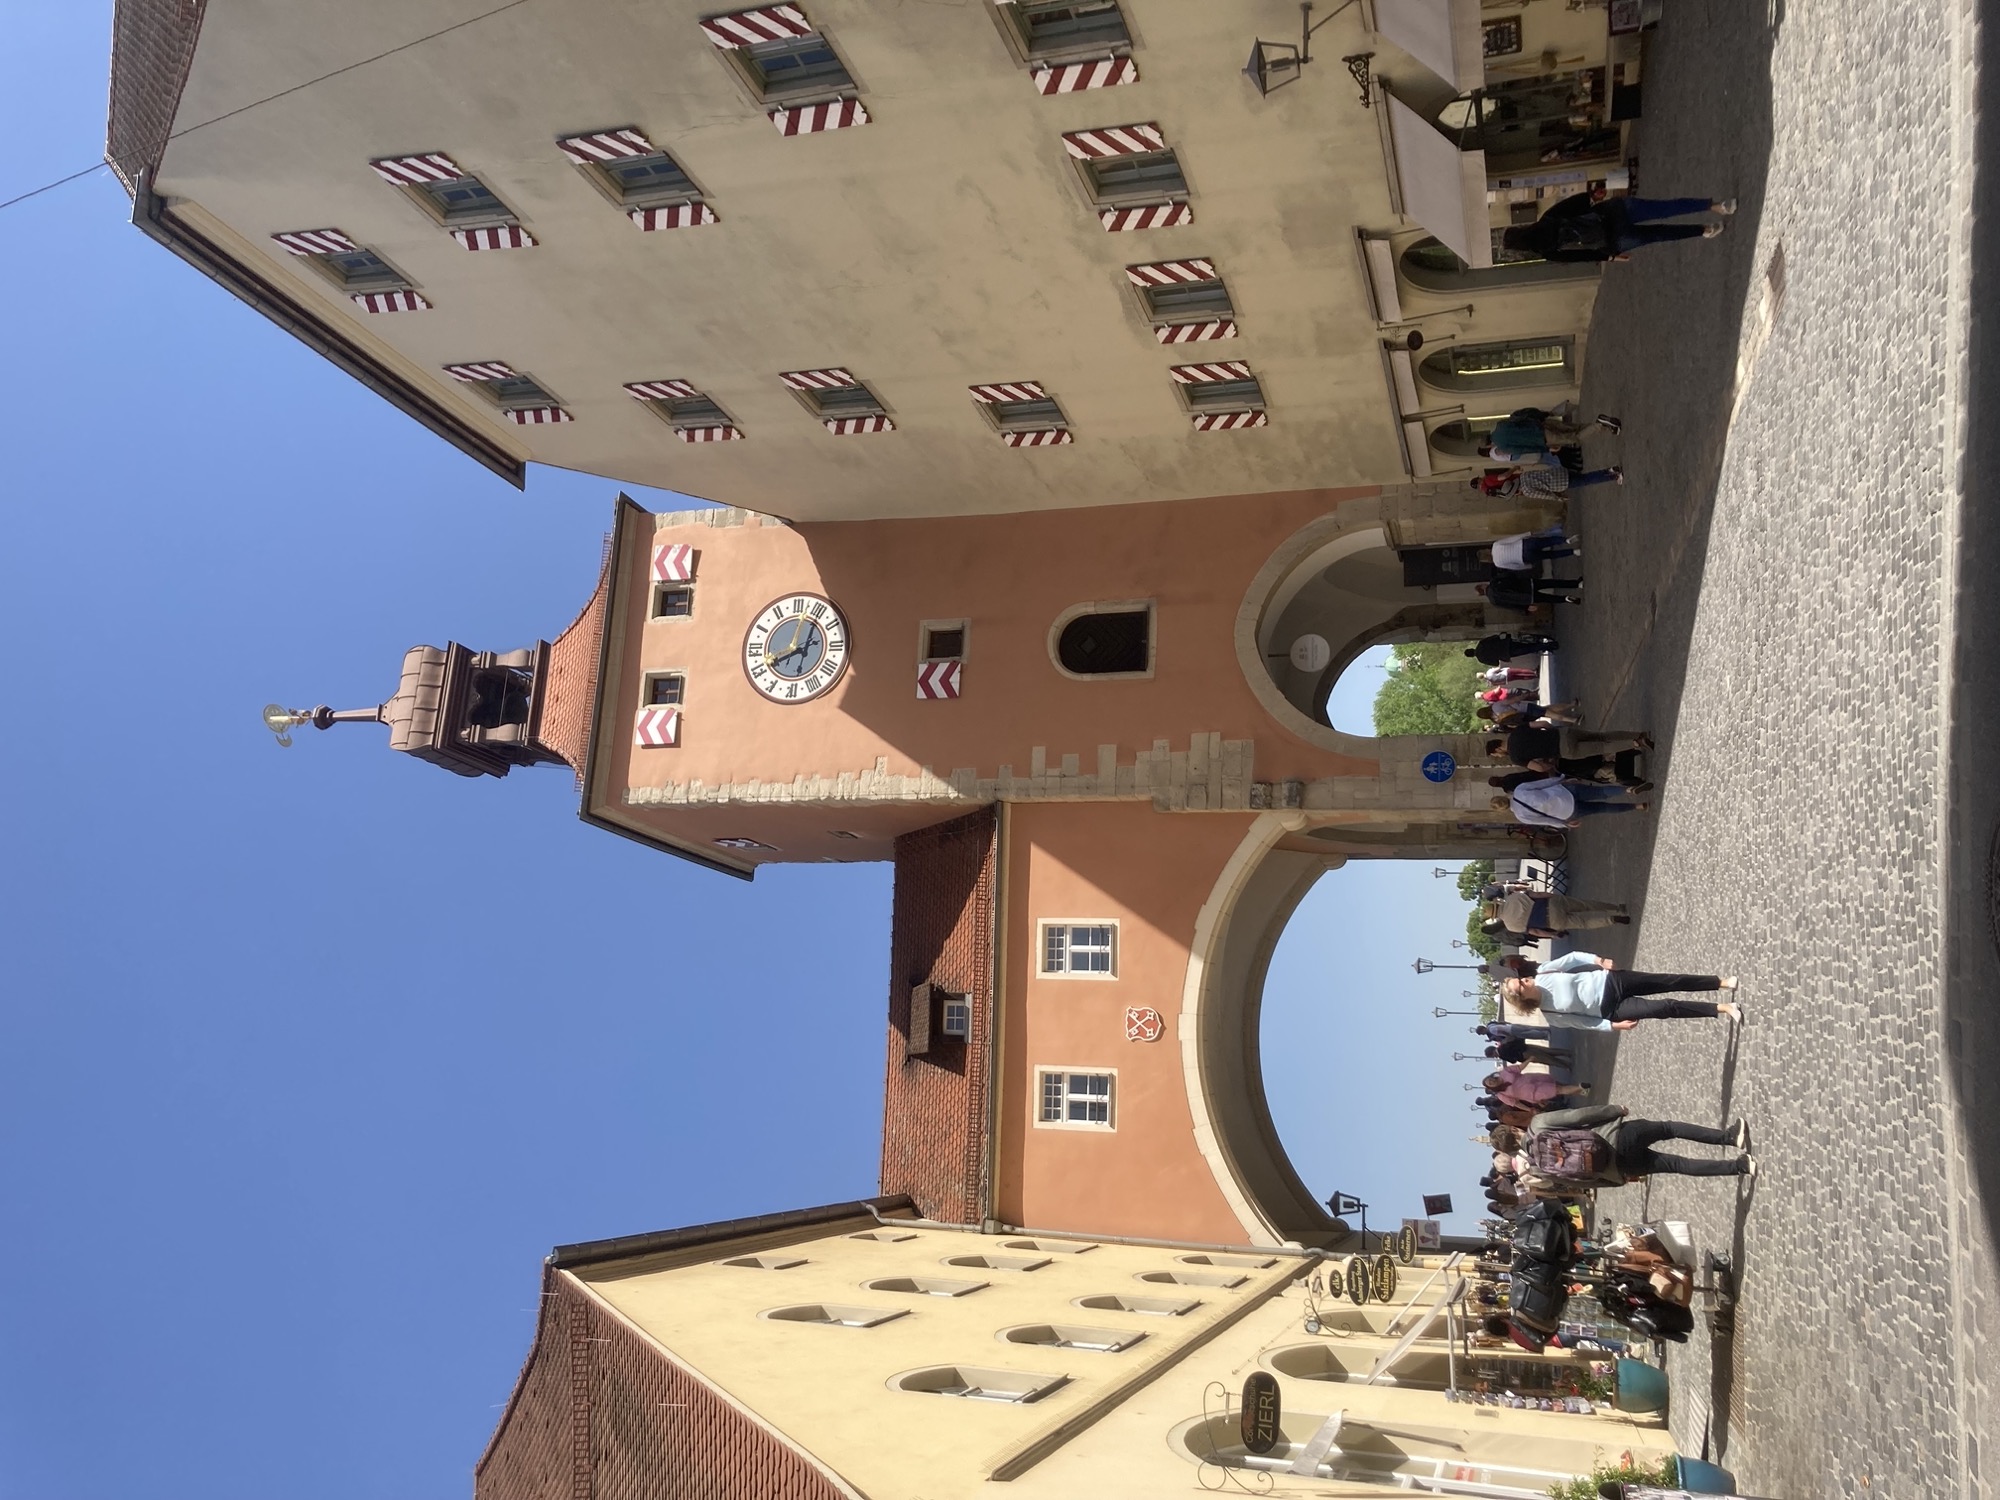 Brückturm in der Altstadt von Regensburg, links und rechts zwei Gebäude, dazwischen überspannen zwei Torbögen den Abstand, rechts ein Turm mit einer Uuhr daran, die Fenster haben rot-weiß-gestreifte Fensterläden